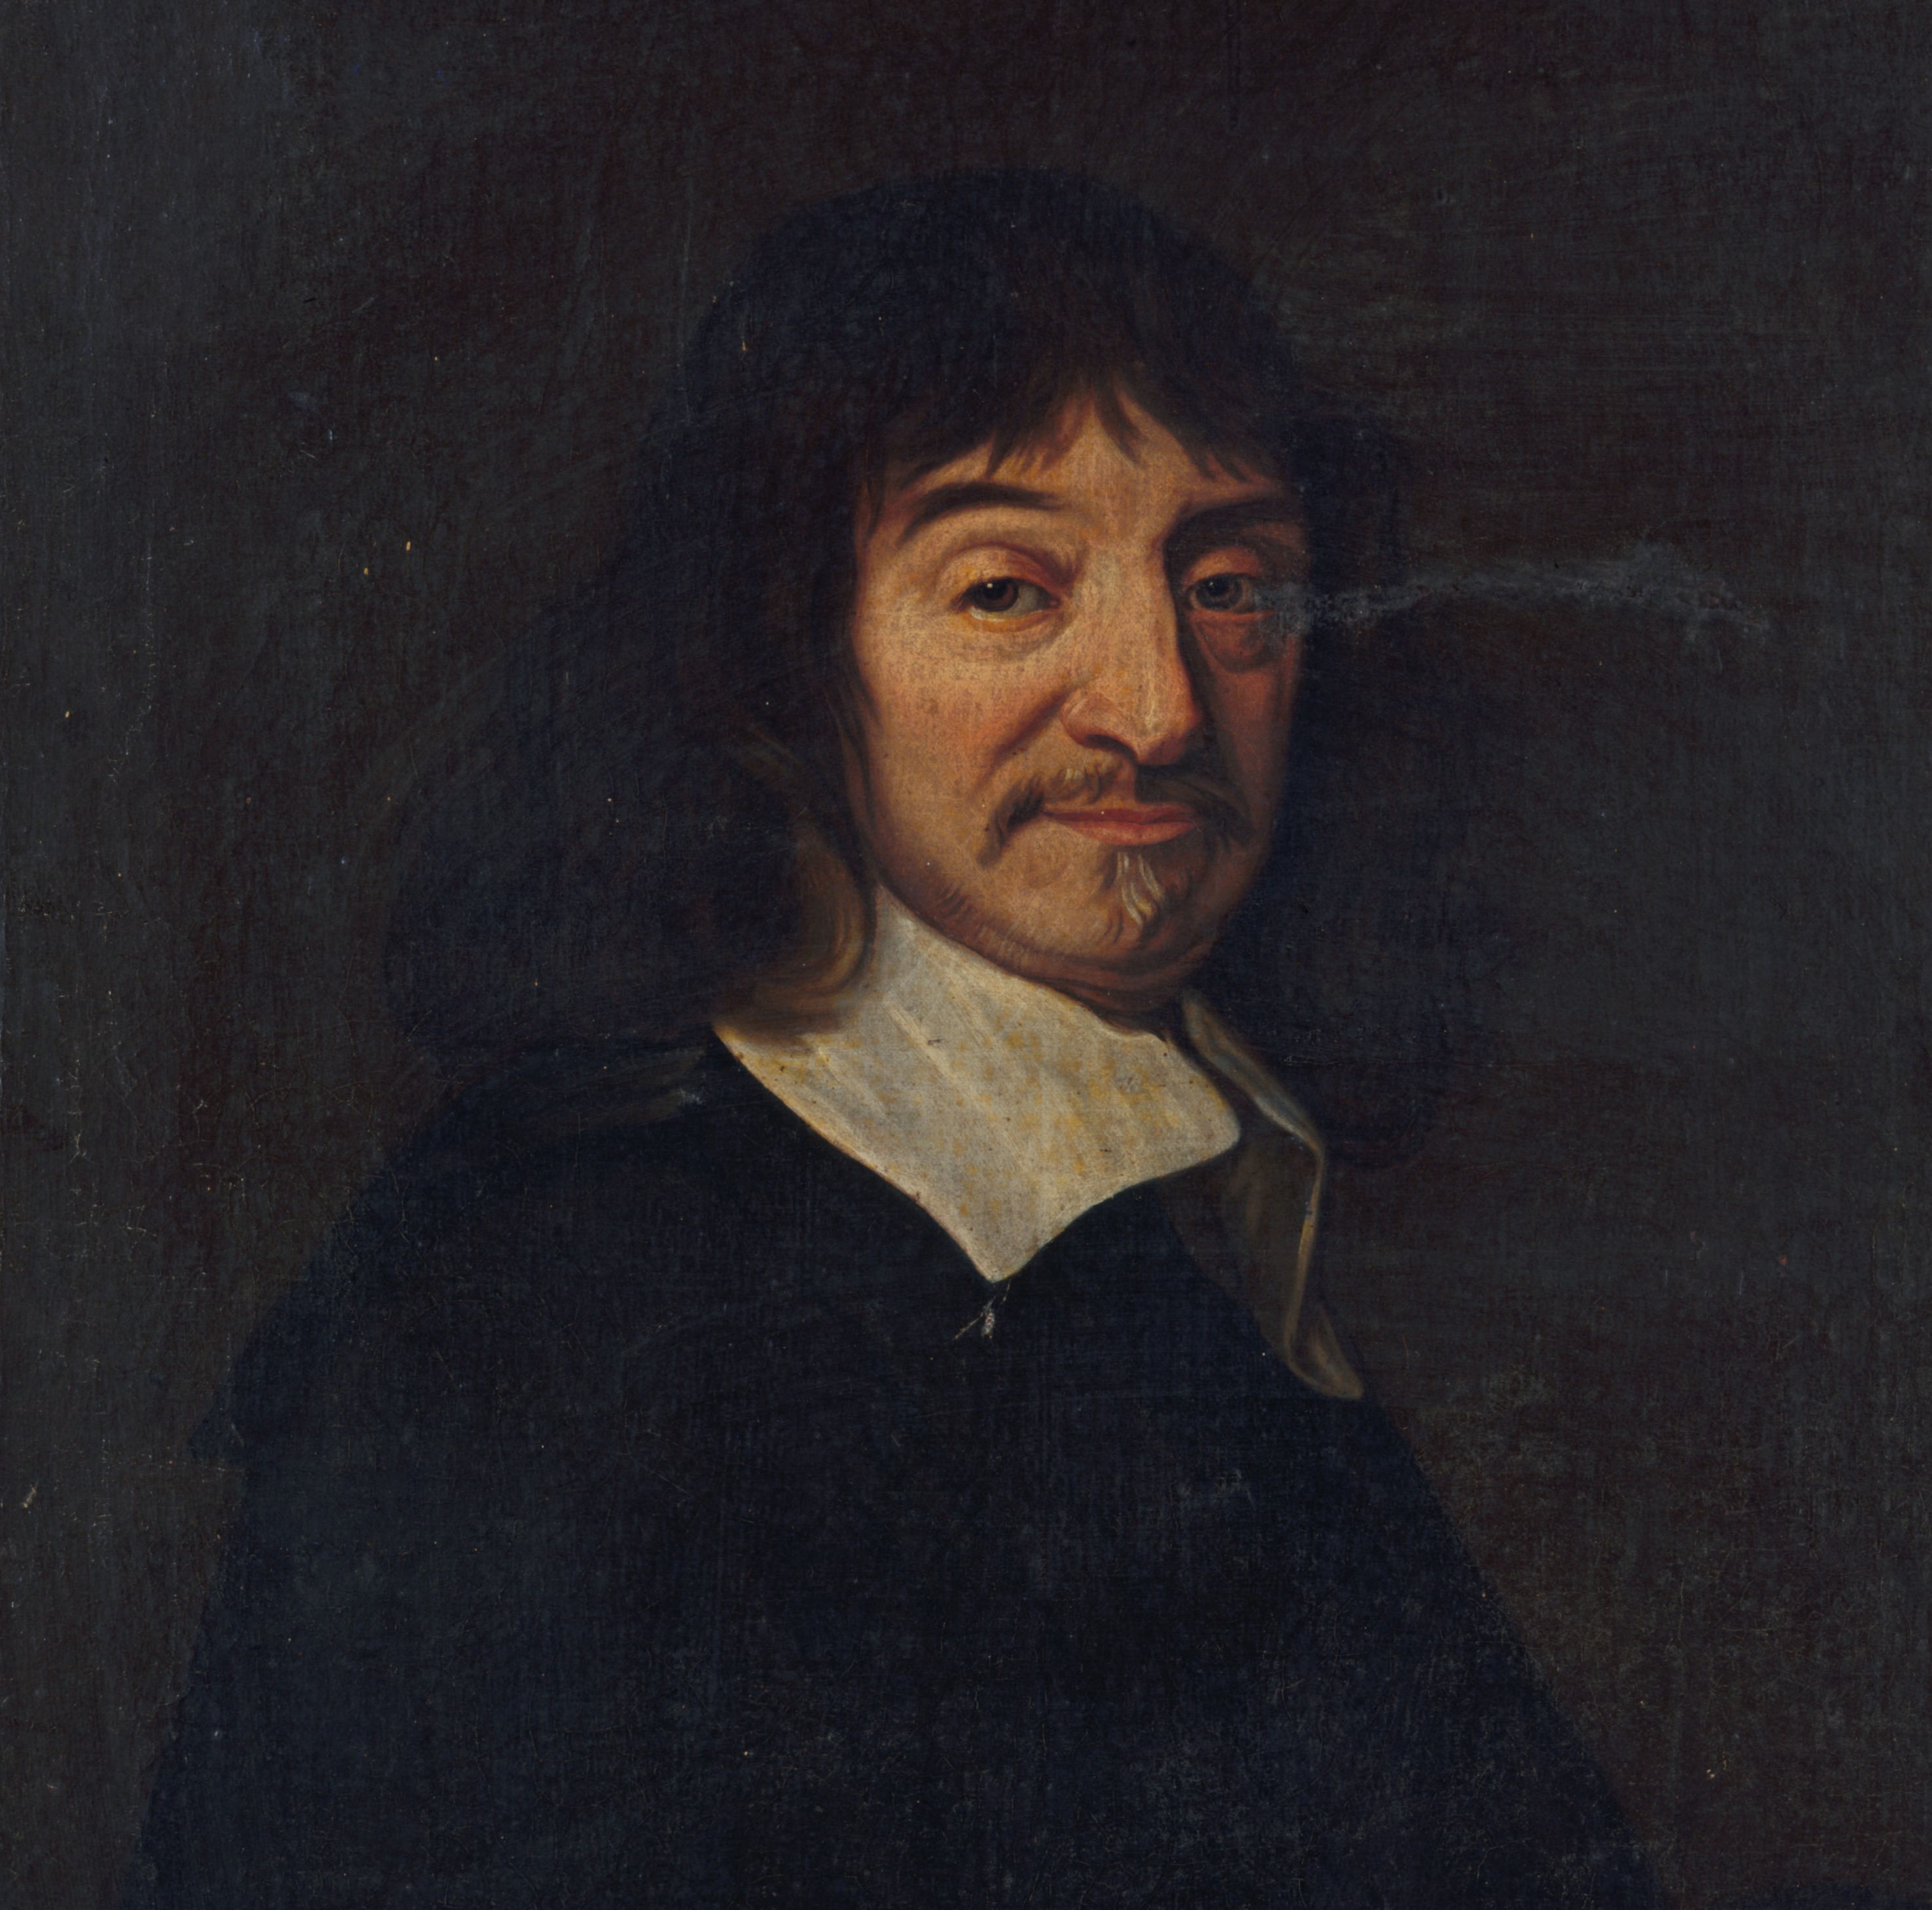 La imagen muestra al matemático Descartes